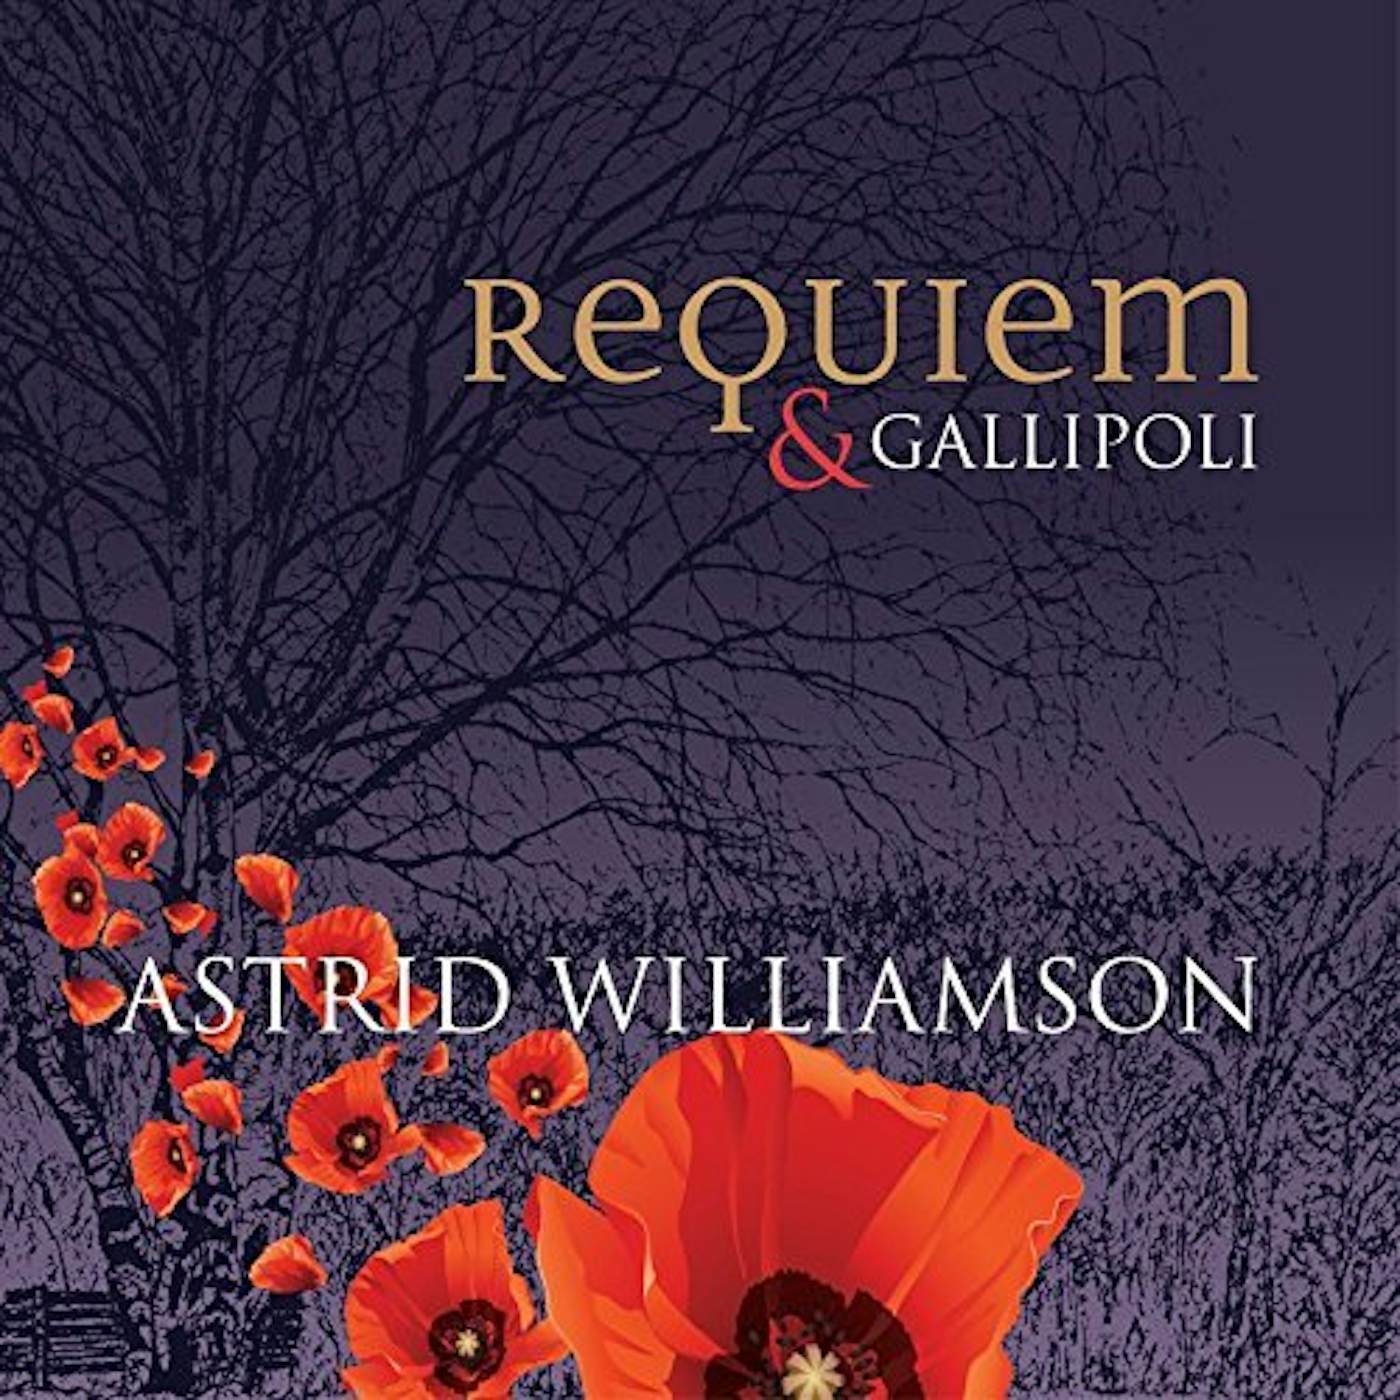 Astrid Williamson Requiem & Gallipoli Vinyl Record